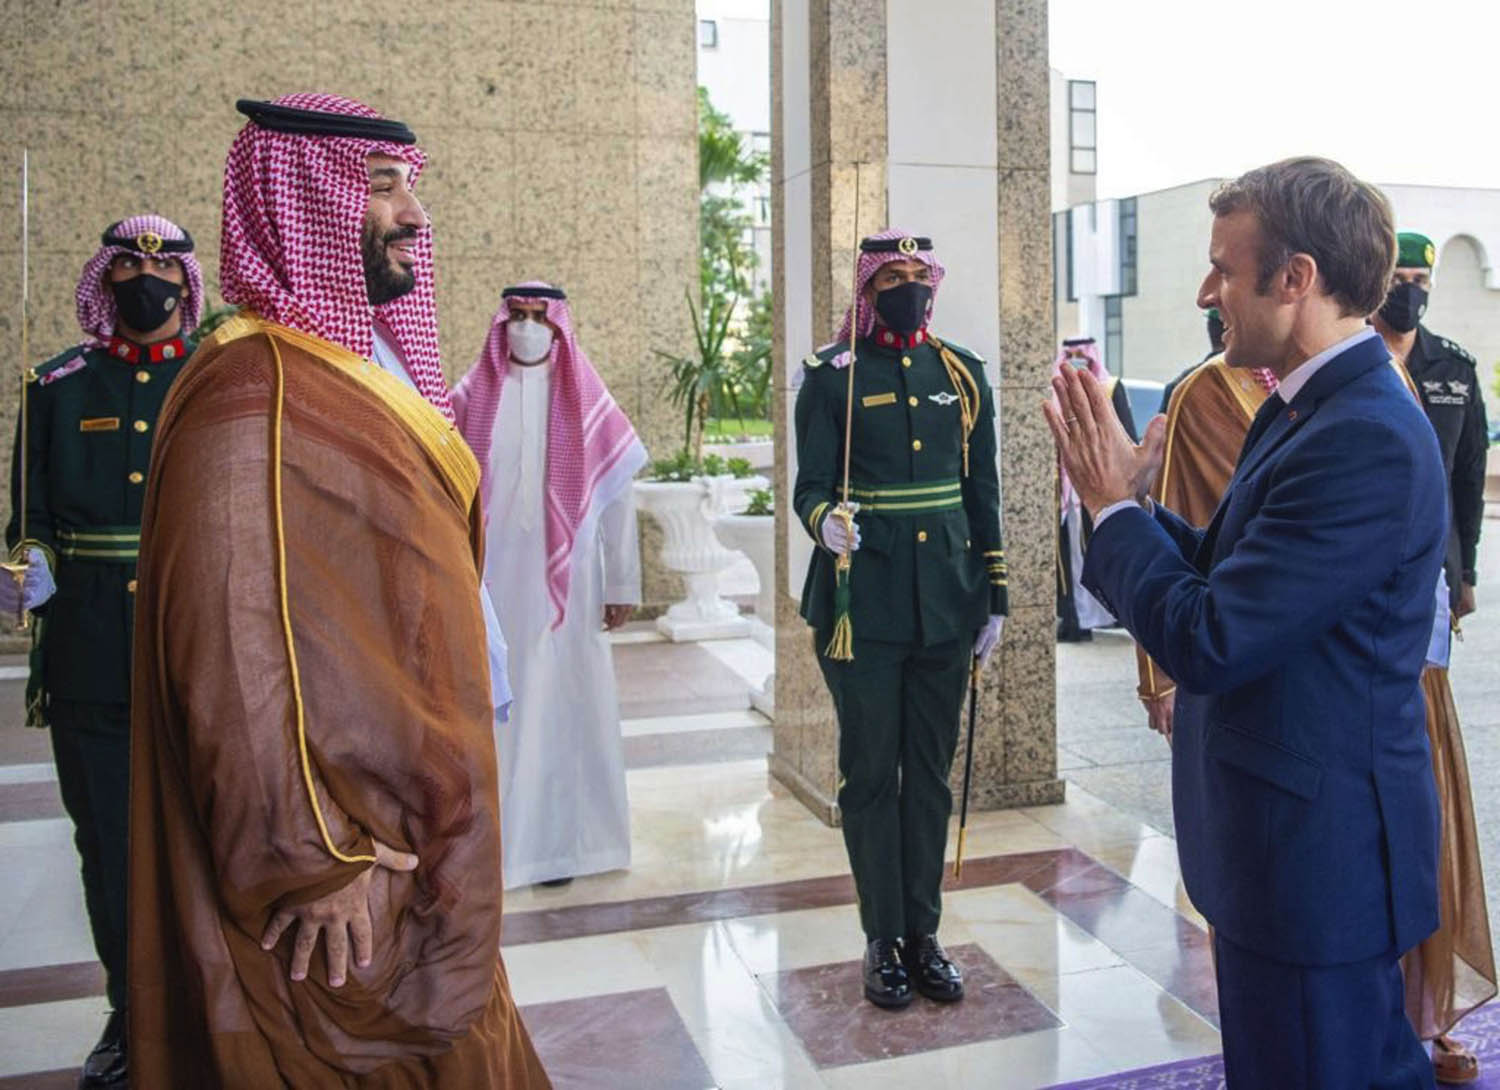 ولي العهد السعودي الأمير محمد بن سلمان يستقبل الرئيس الفرنسي ايمانويل ماكرون في جدة